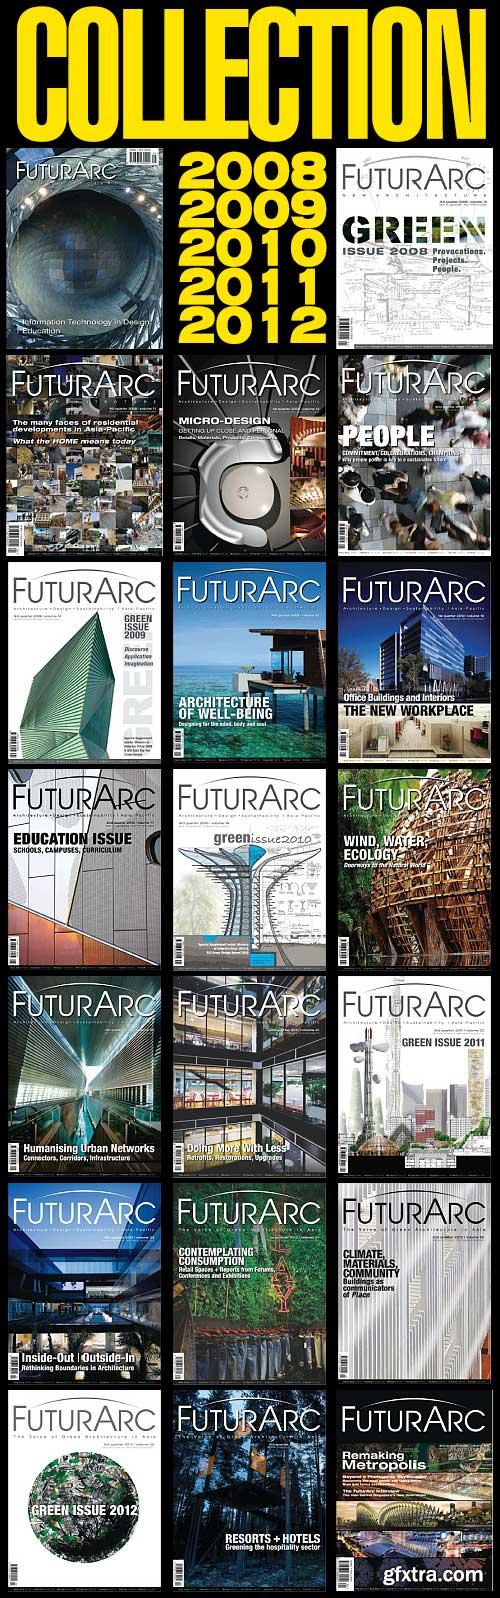 FuturArc Magazine 2008-2012 Full Collection